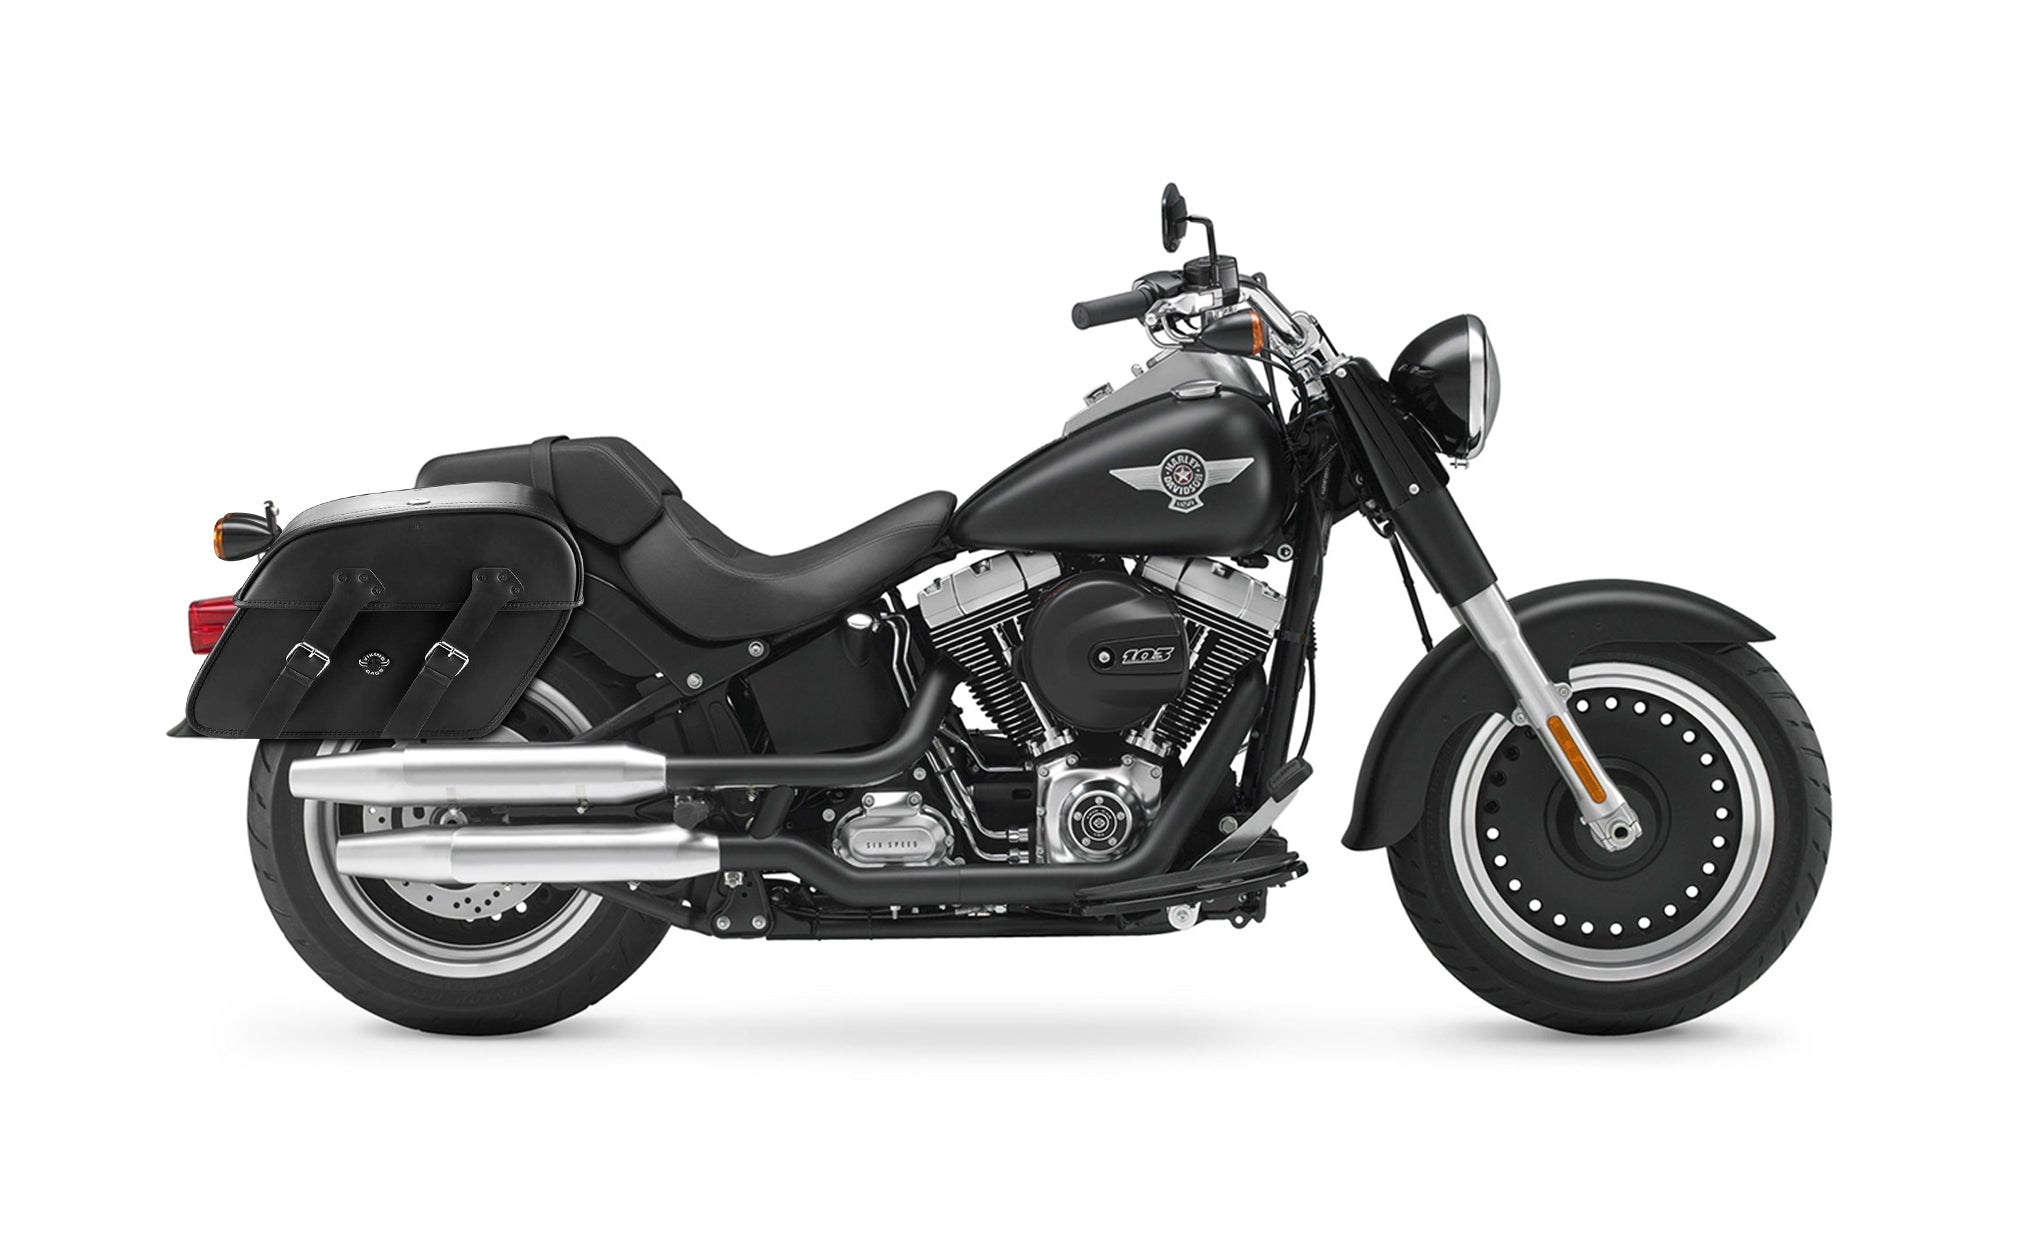 Viking Raven Extra Large Leather Motorcycle Saddlebags For Harley Softail Fat Boy Lo Flstfb on Bike Photo @expand